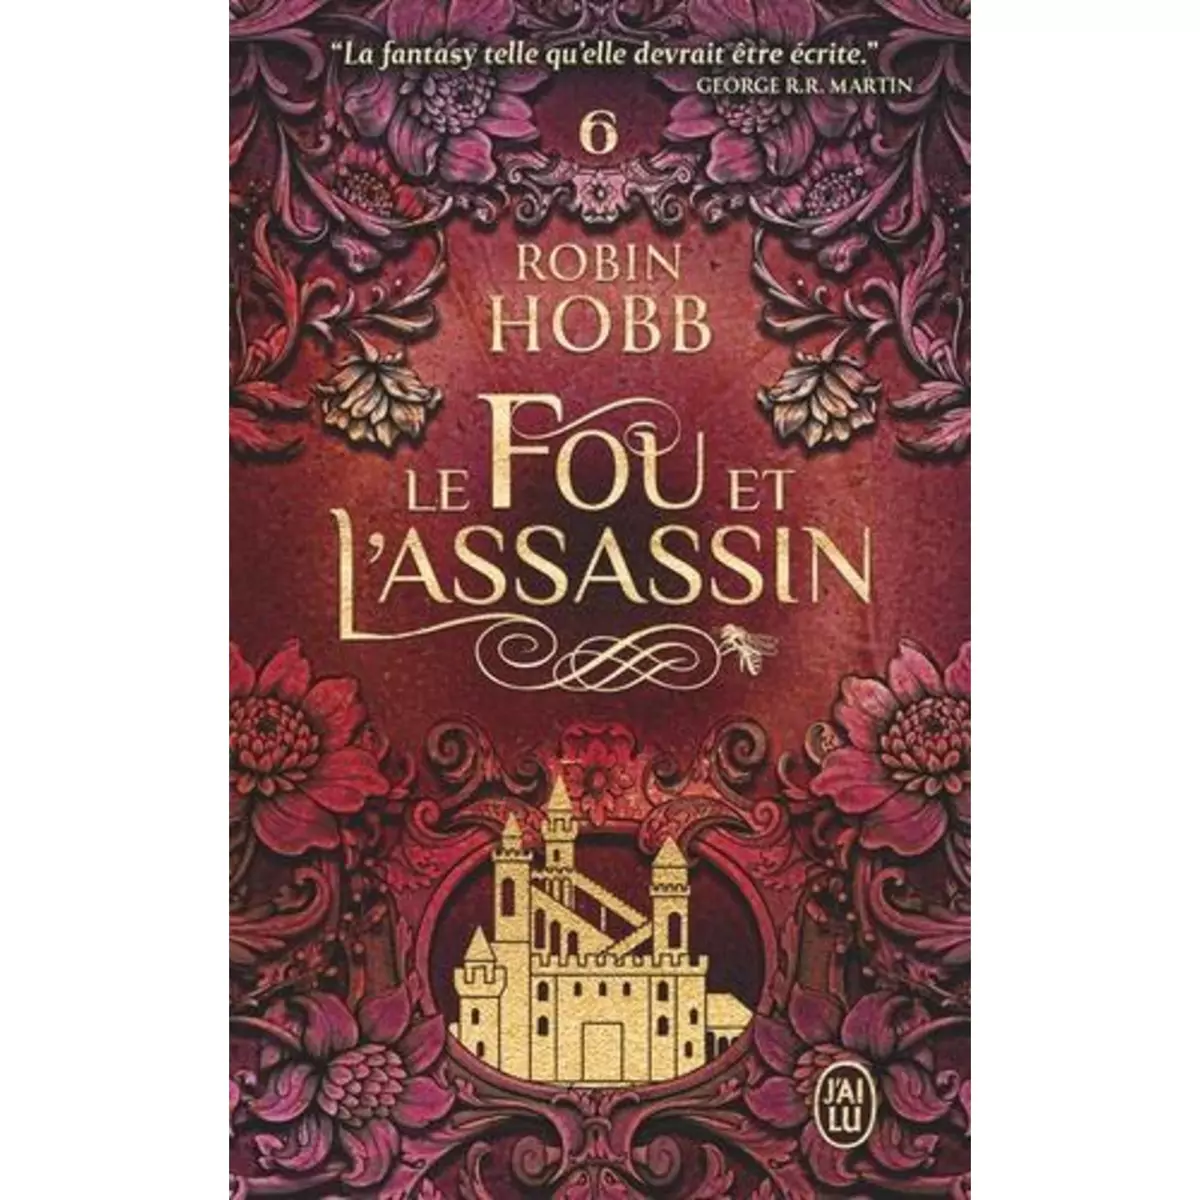  LE FOU ET L'ASSASSIN TOME 6 : LE DESTIN DE L'ASSASSIN, Hobb Robin